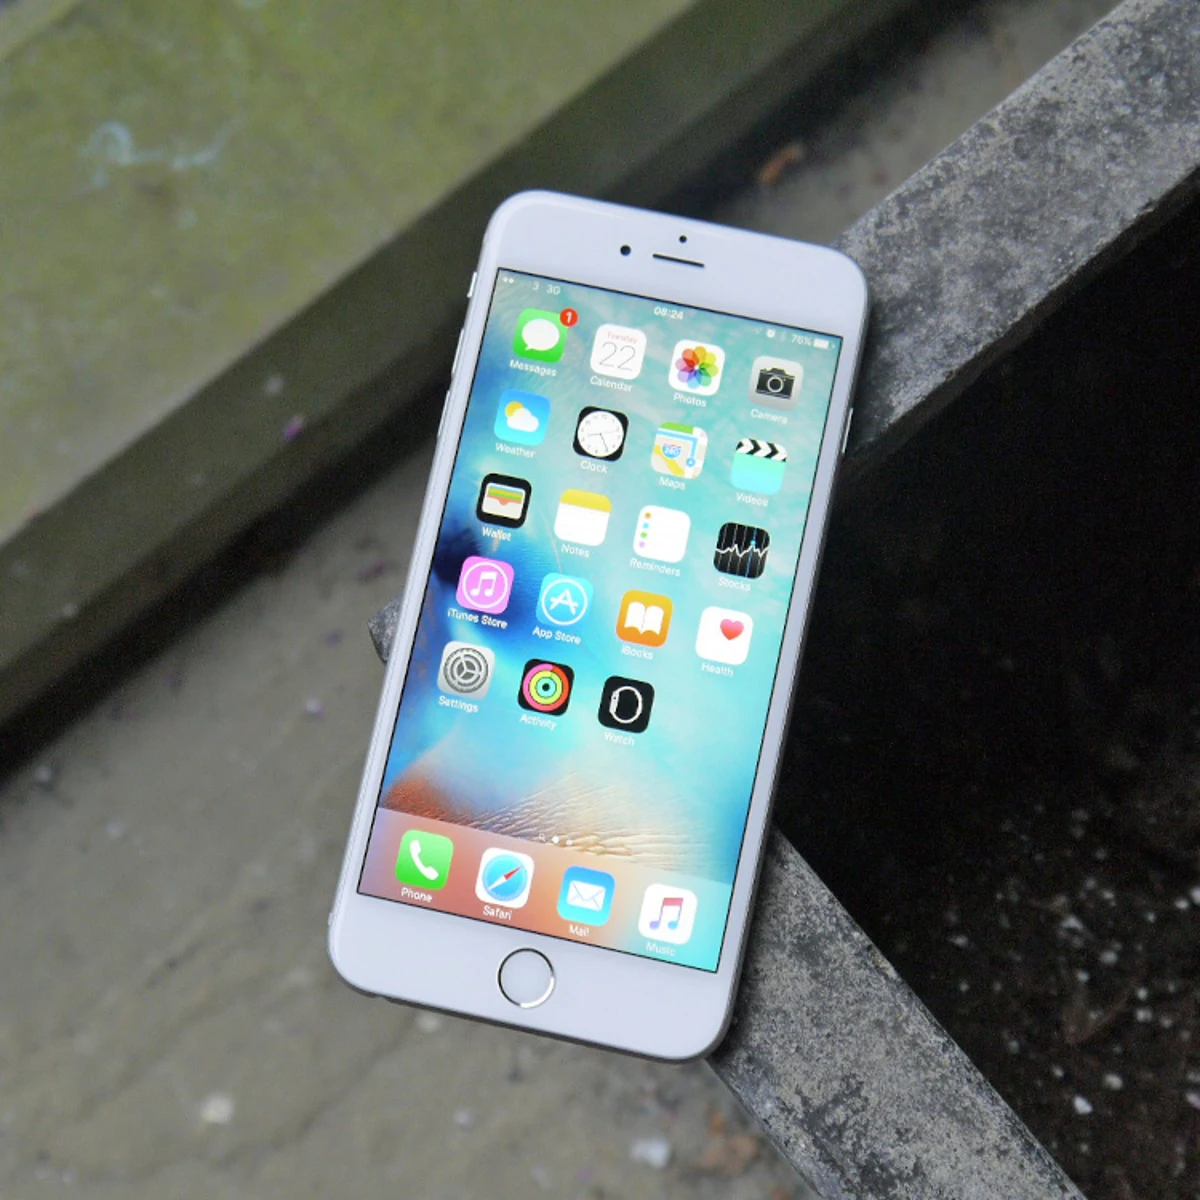 El iPhone 6 Plus ya es 'vintage' según Apple, pero el iPhone 6